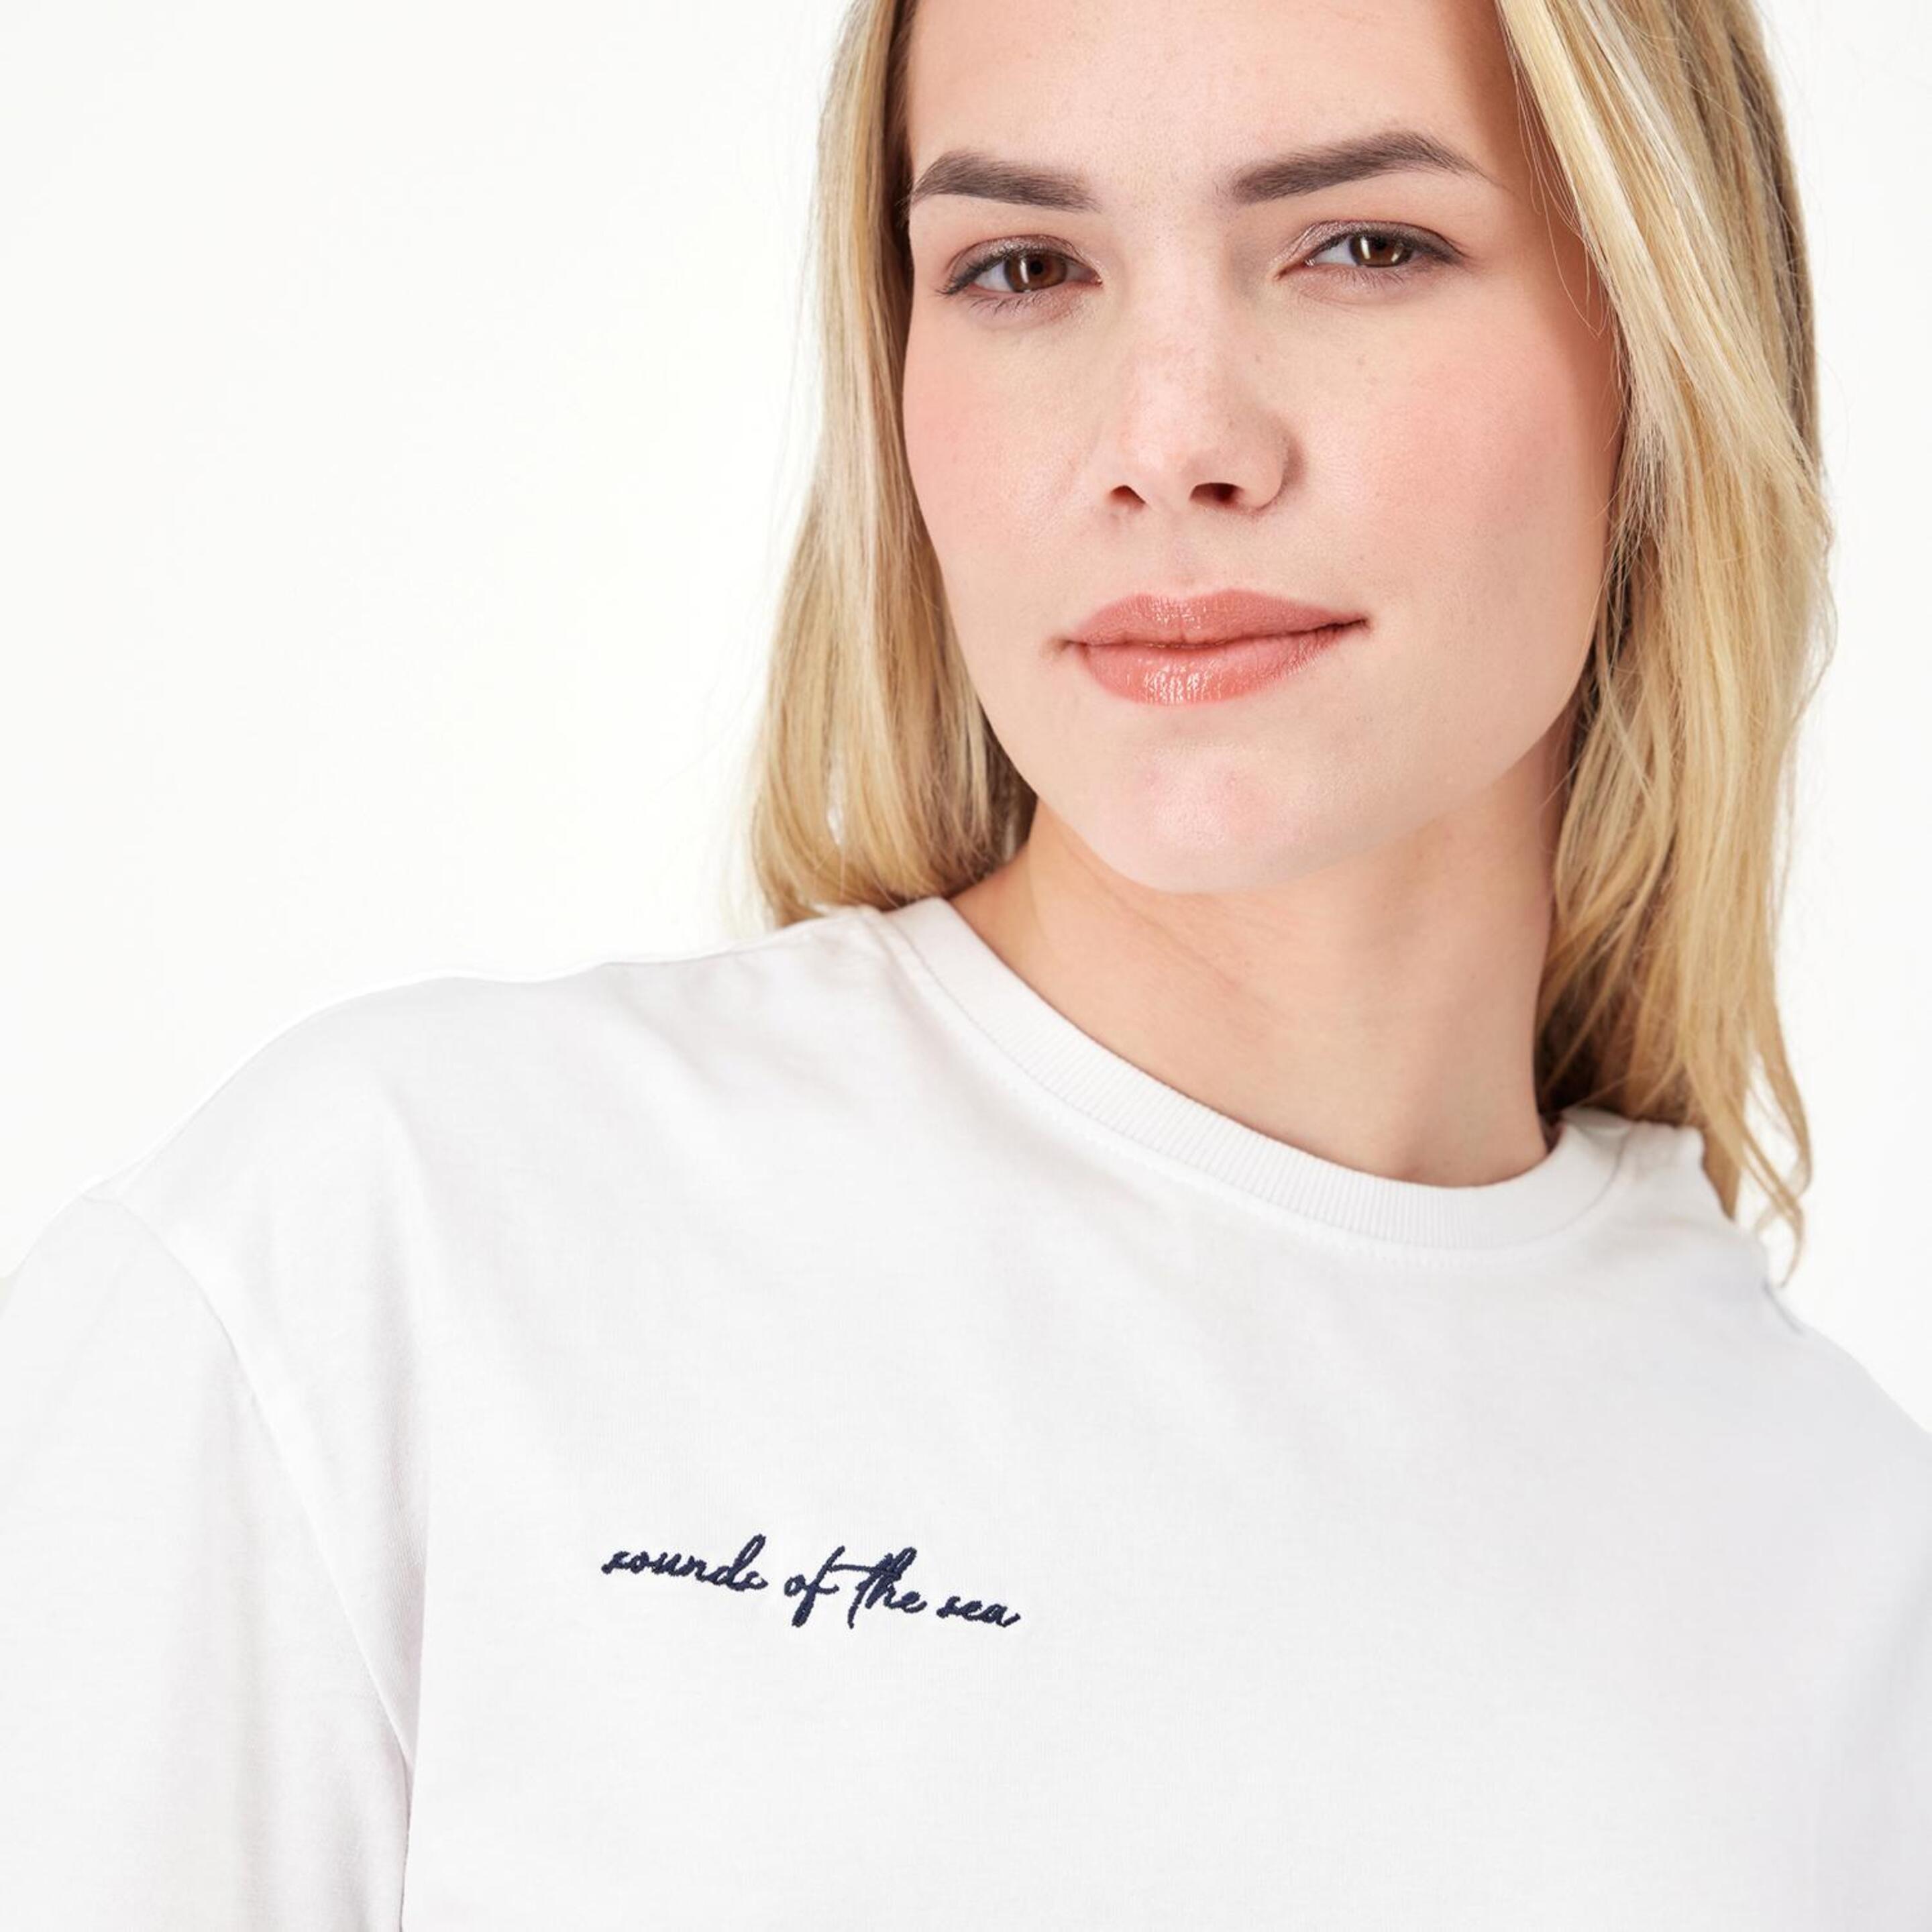 Silver Nautic 2 - Blanco - Camiseta Mujer